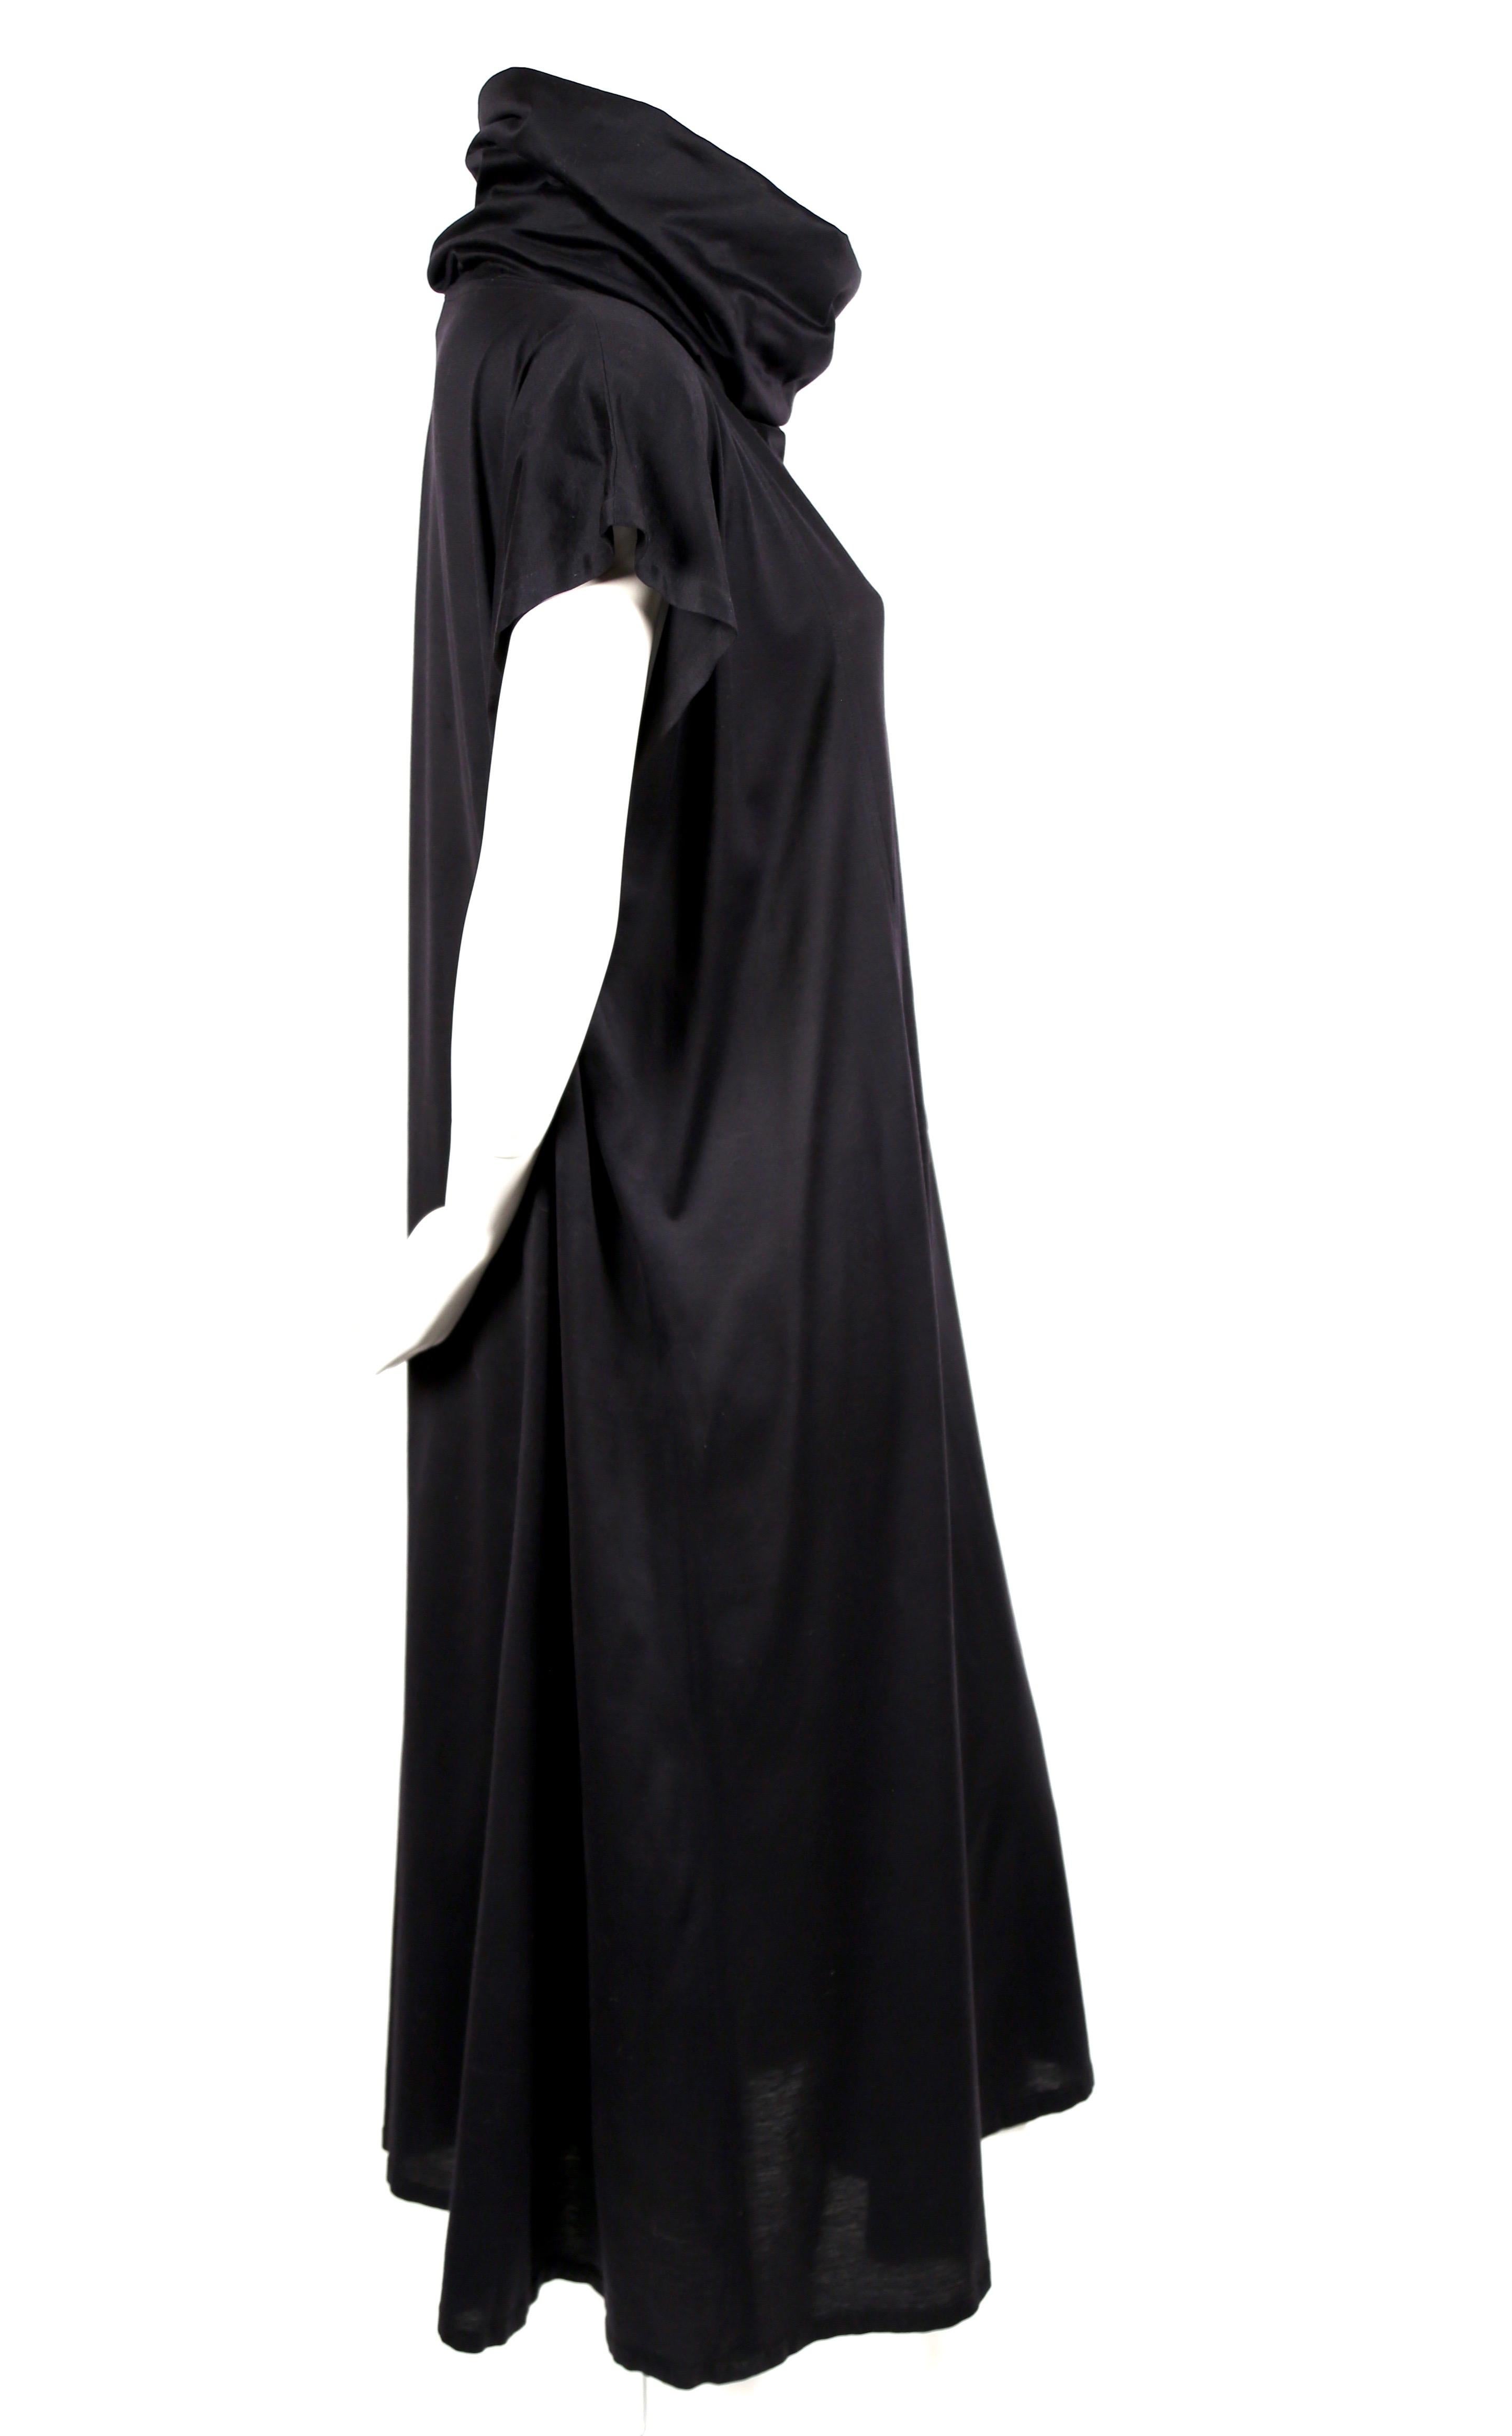 Robe en jersey de coton noir de jais, de jauge fine, avec col bénitier et poche plaquée en angle sur le devant, conçue par Kenzo Takada et datant de 1985, telle que vue sur le défilé de printemps de Kenzo. La robe est étiquetée comme une taille 36